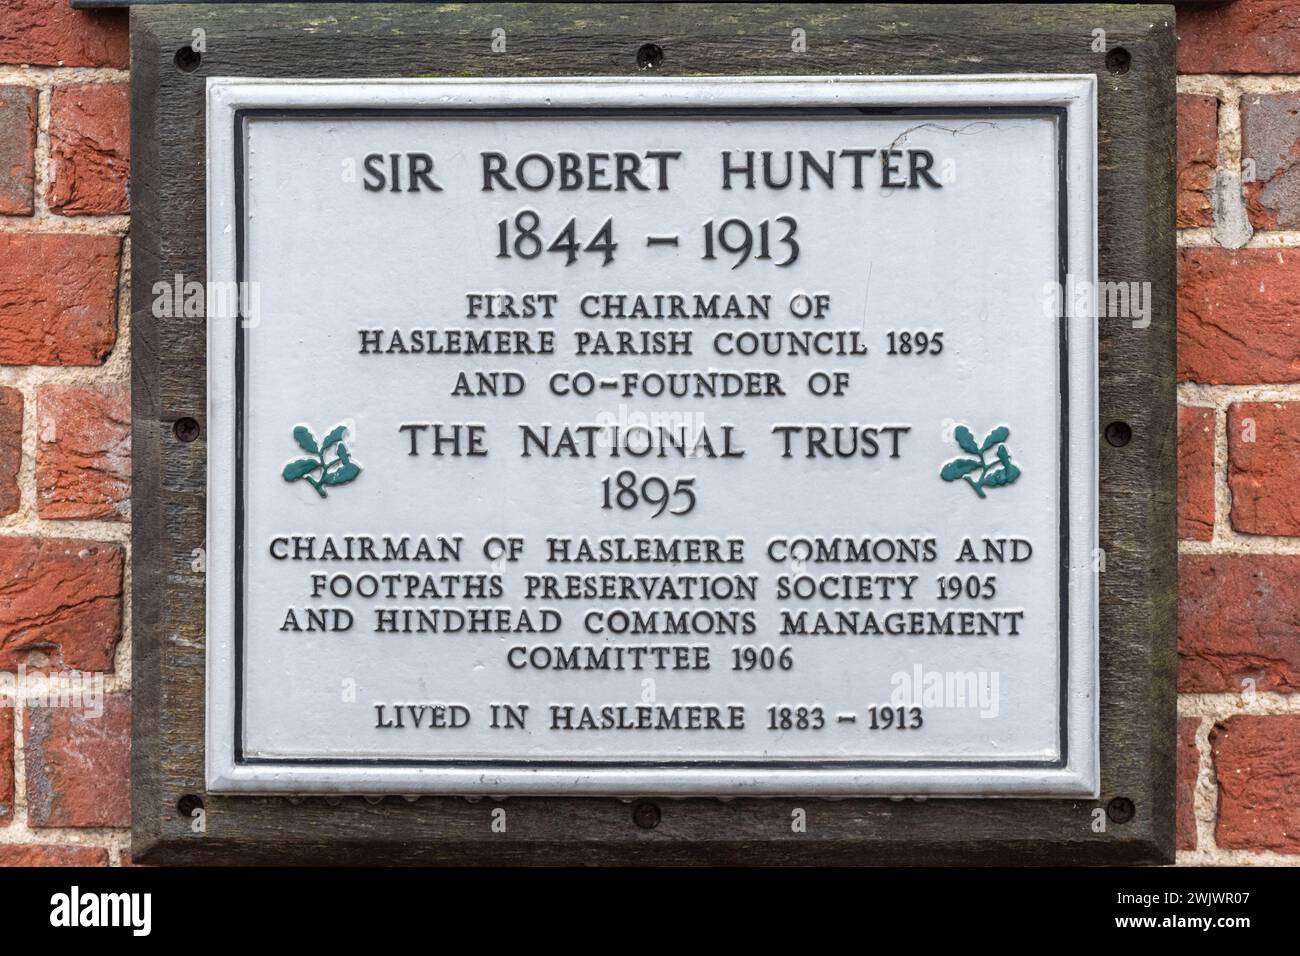 Plaque commémorant Sir Robert Hunter premier président du conseil paroissial de Haslemere et cofondateur du National Trust en 1895, Surrey, Angleterre, Royaume-Uni Banque D'Images